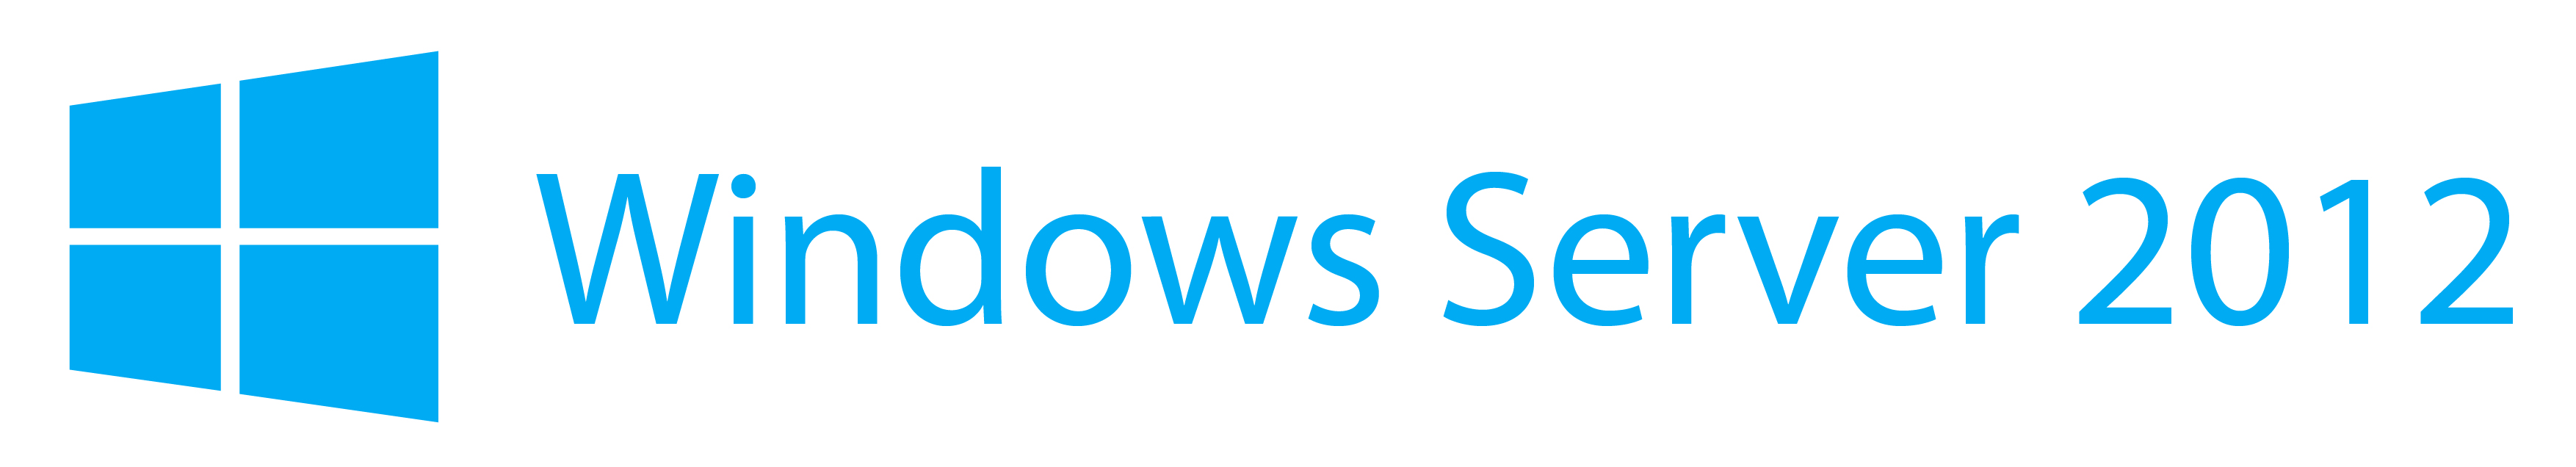 Windows Server 2012 R2 Logo